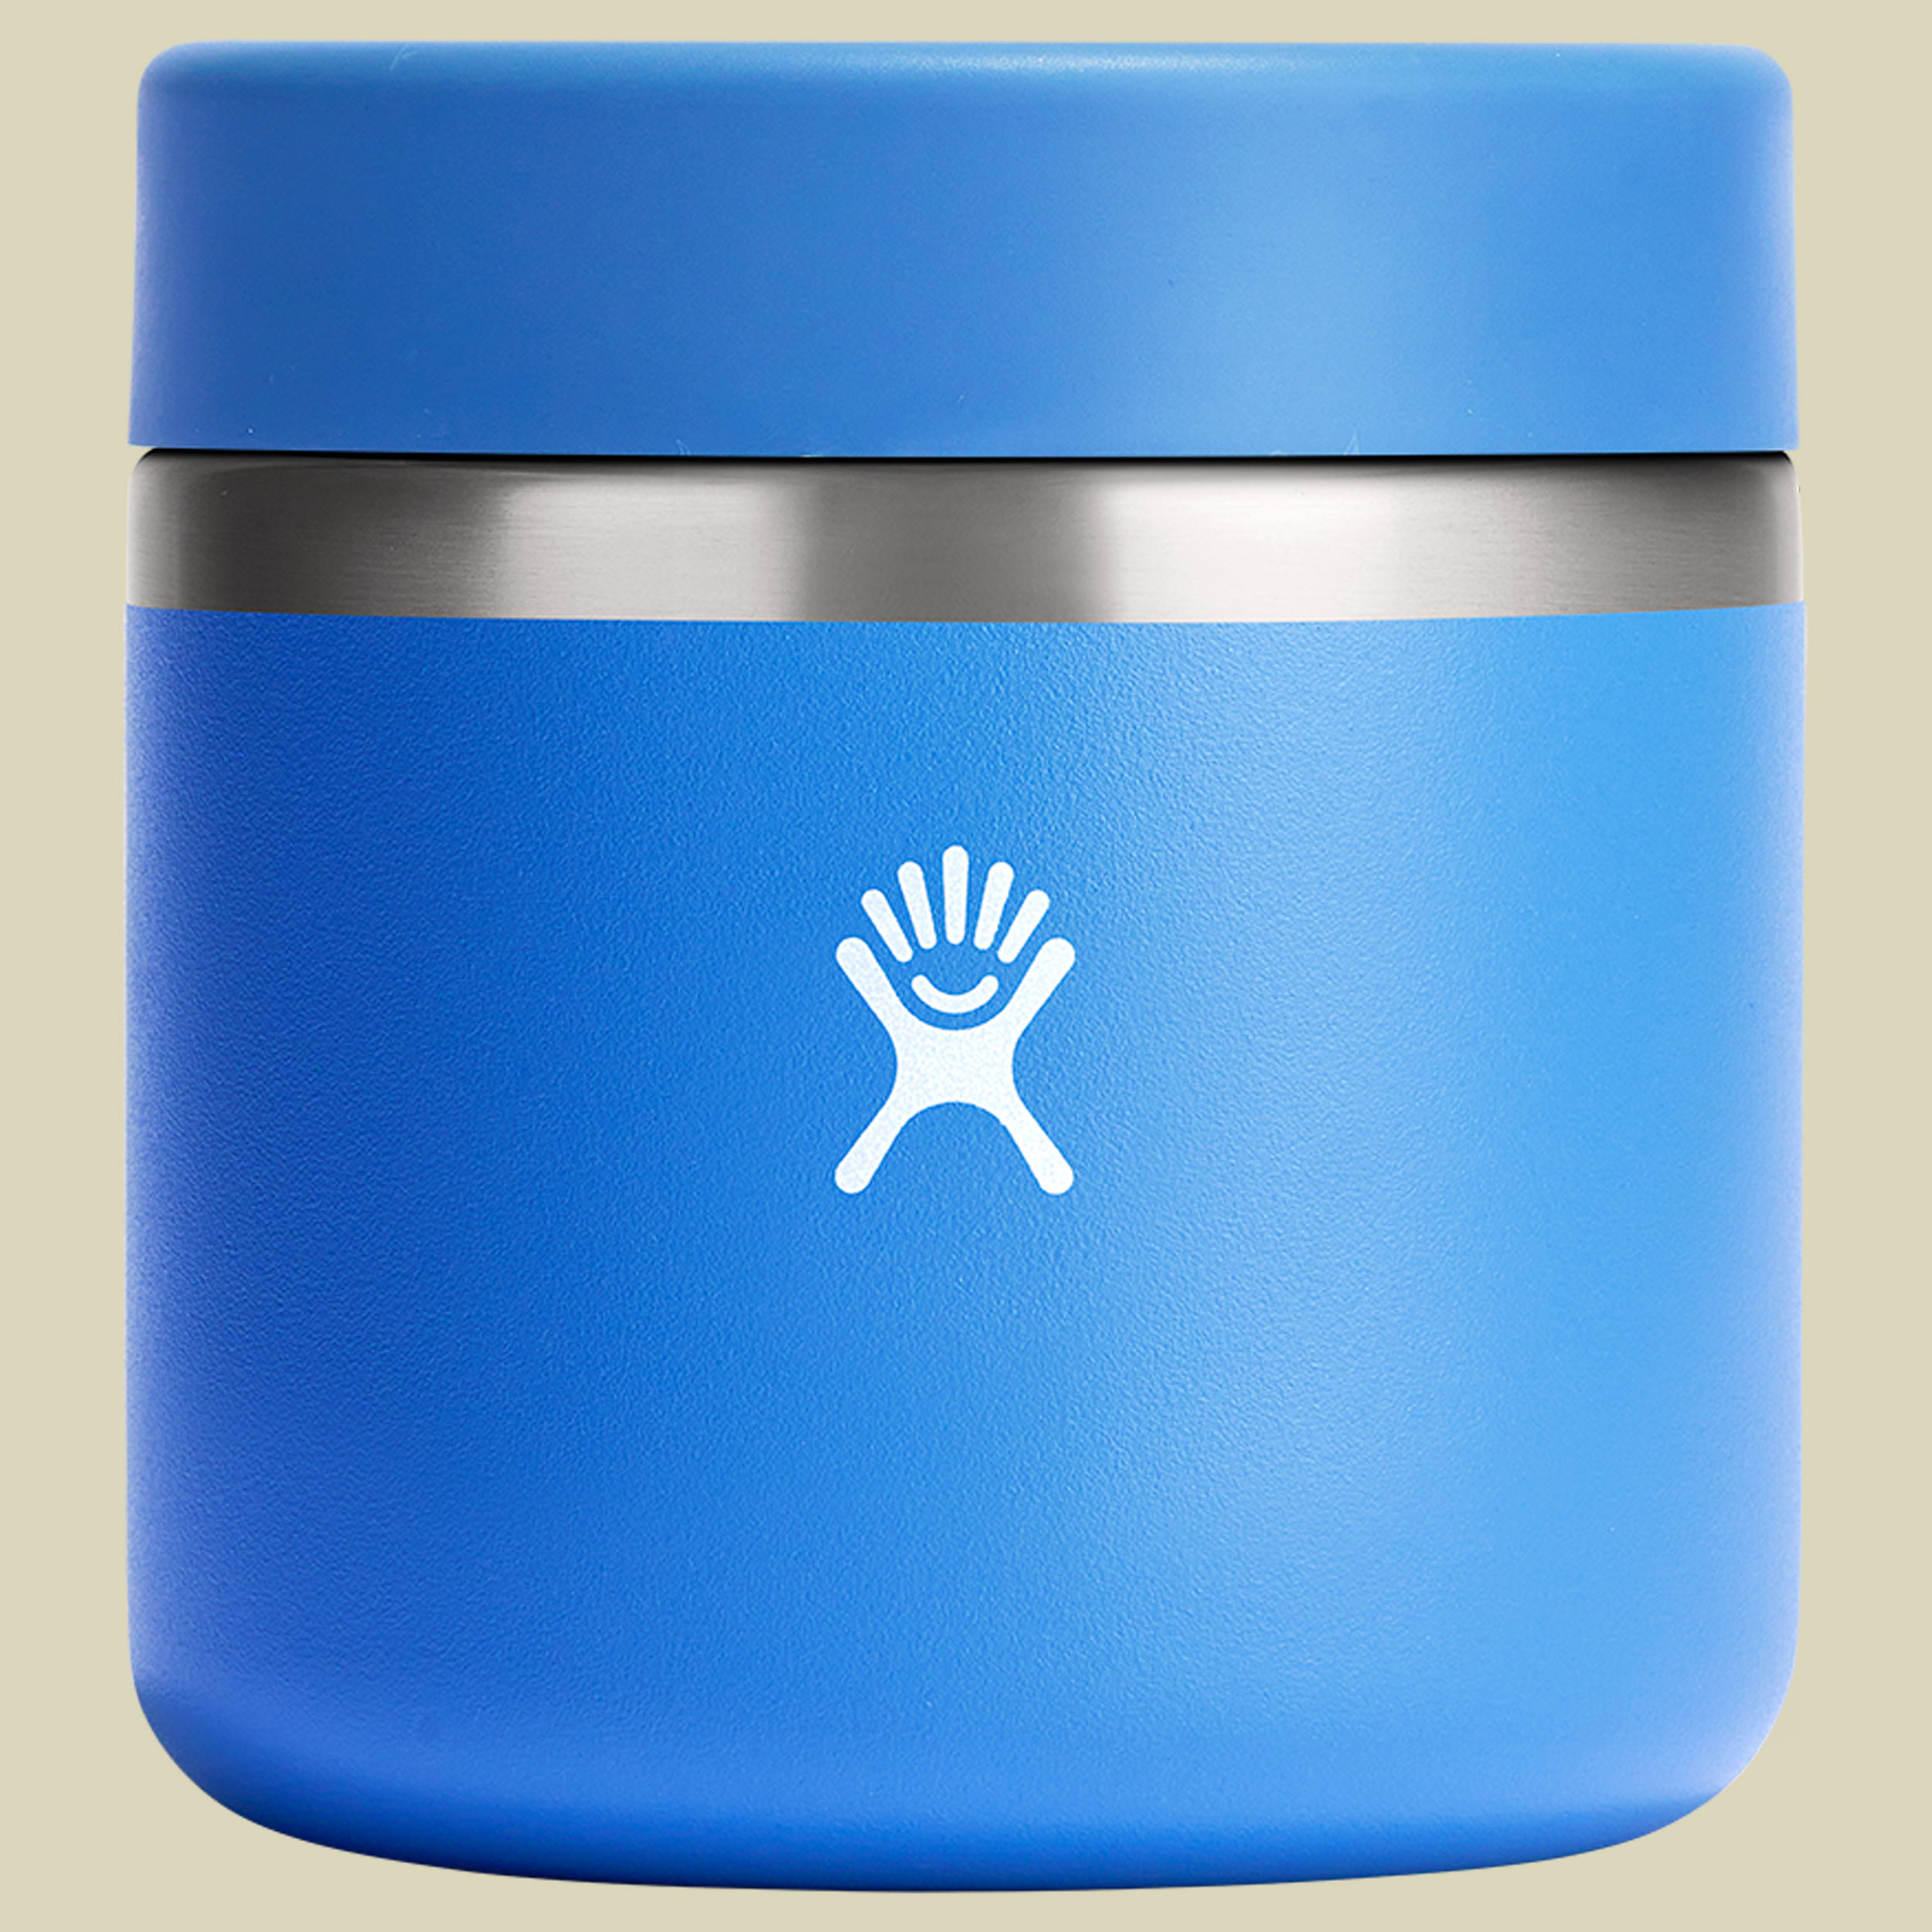 Hydro Flask 20 oz Insulated Food Jar blau 591 - Farbe cascade